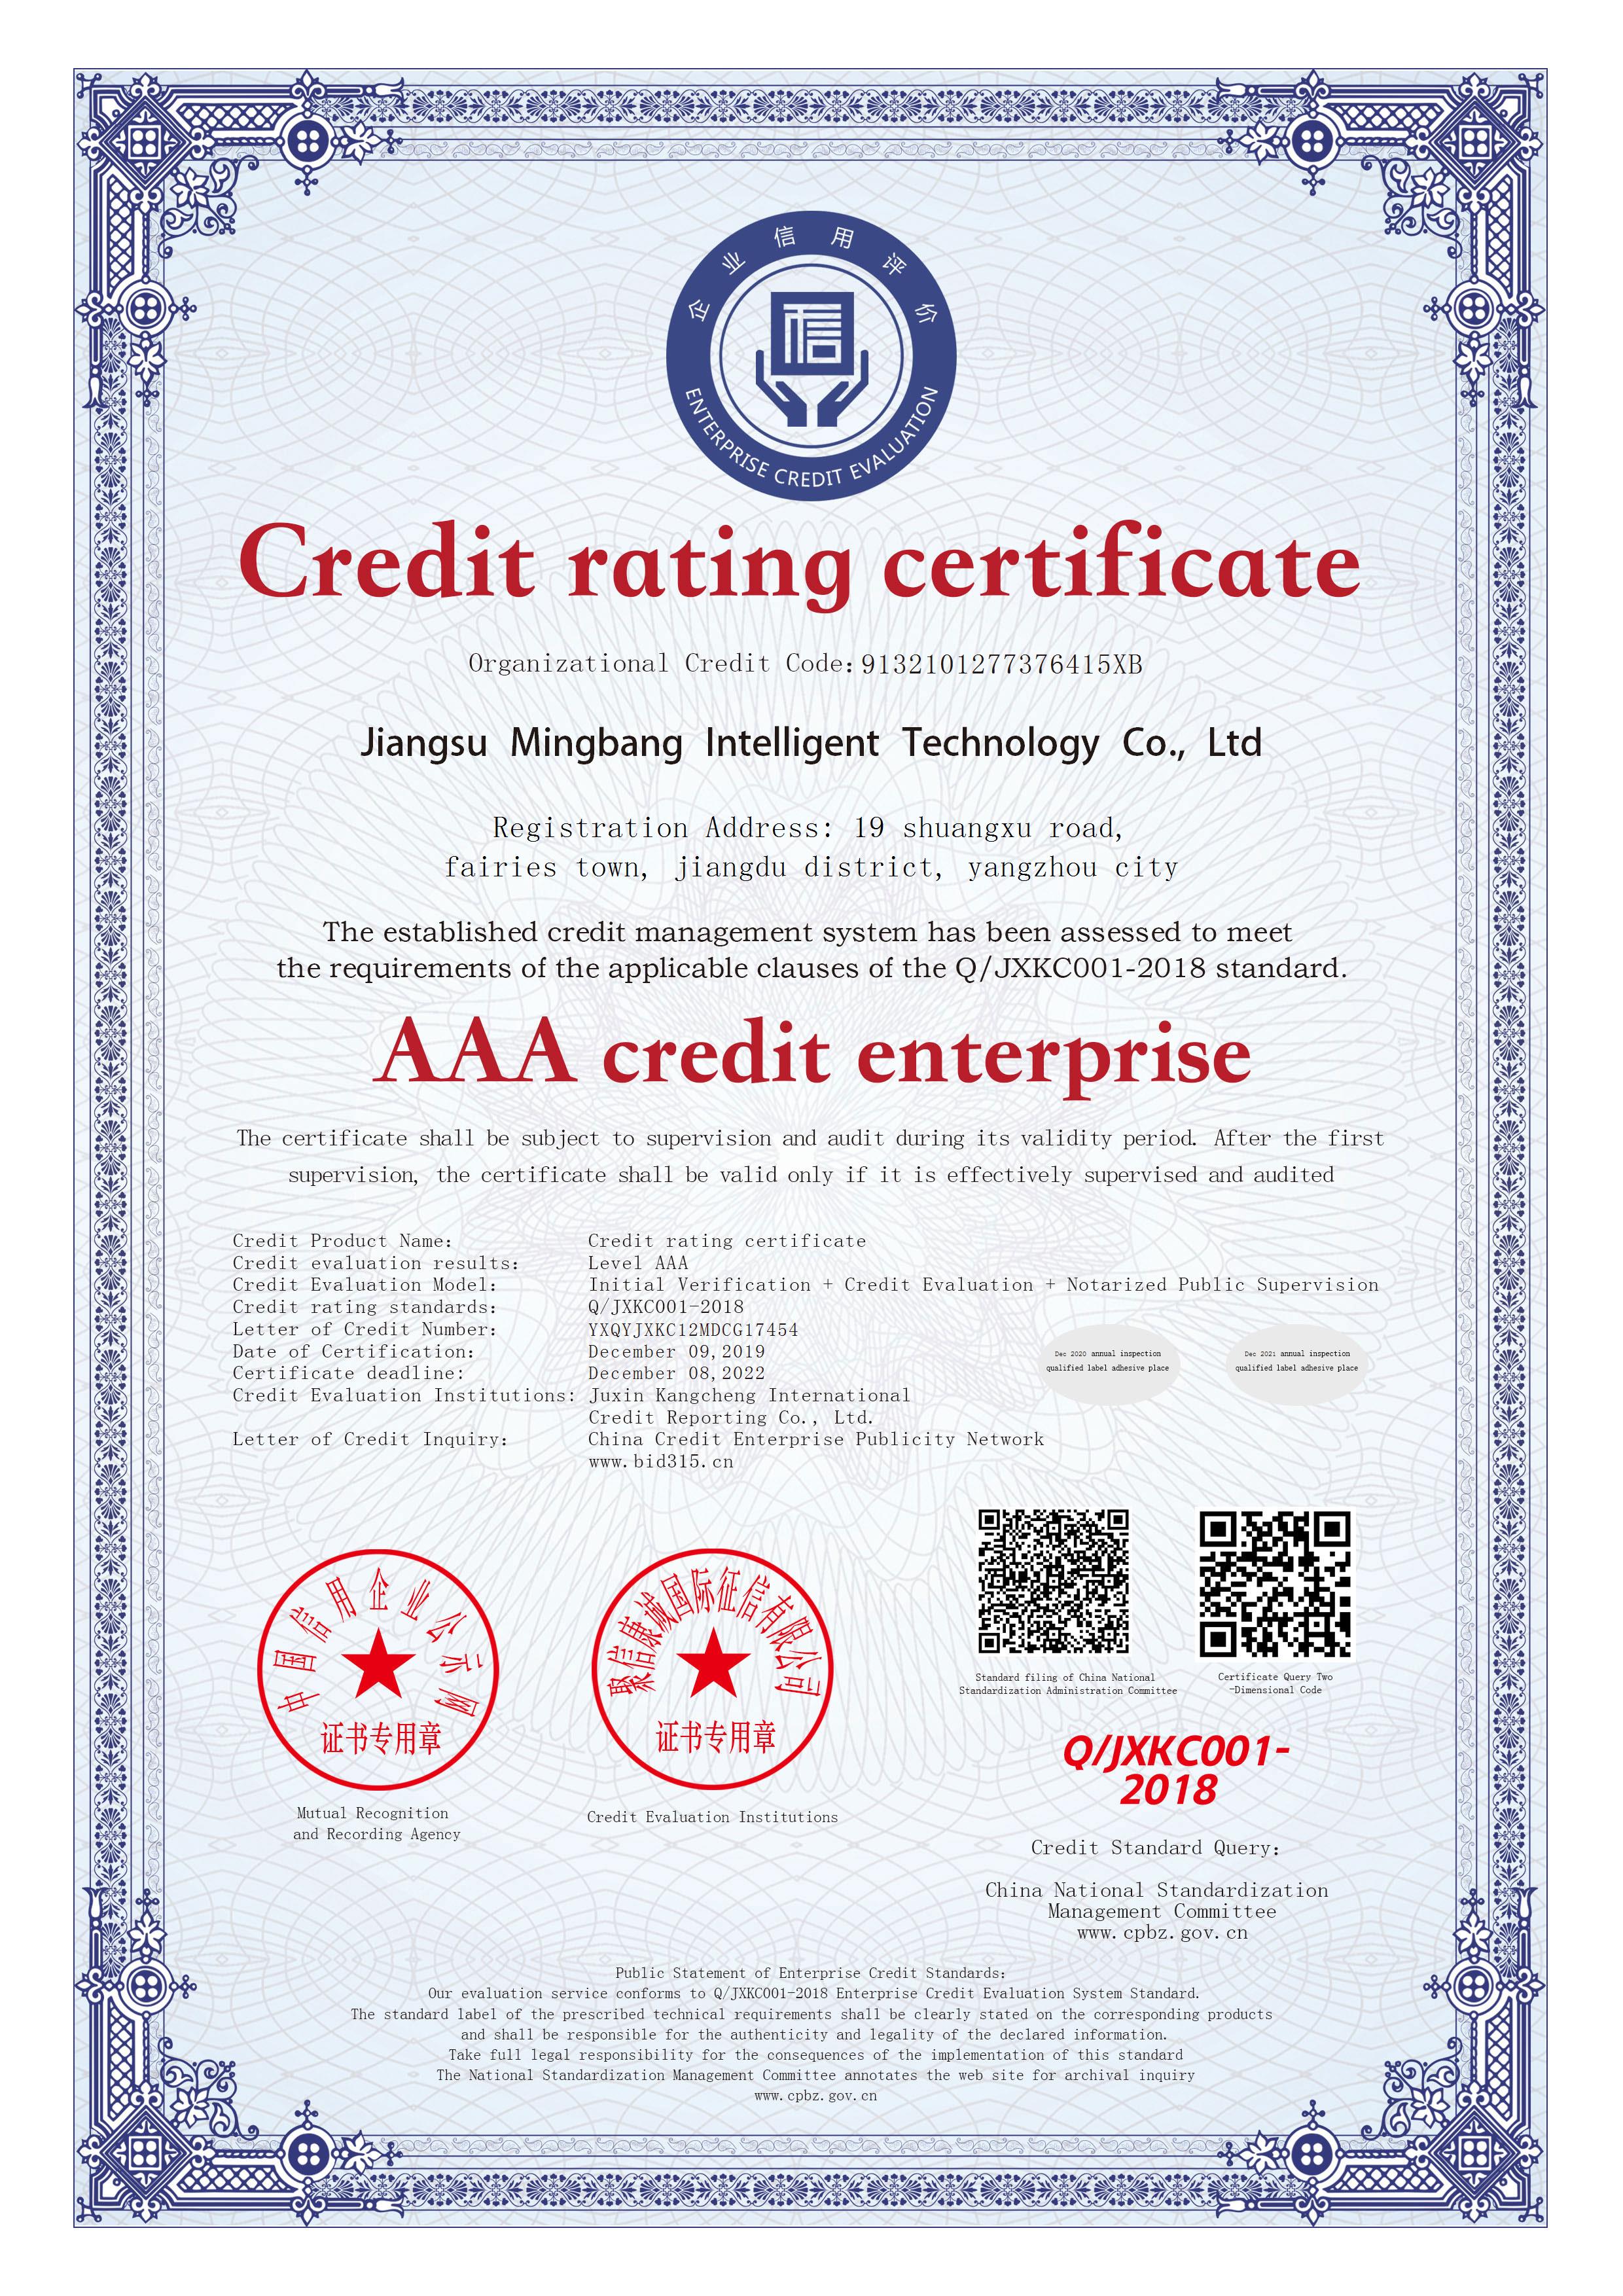 江苏明邦  AAA级信用企业证书  英文版.jpg